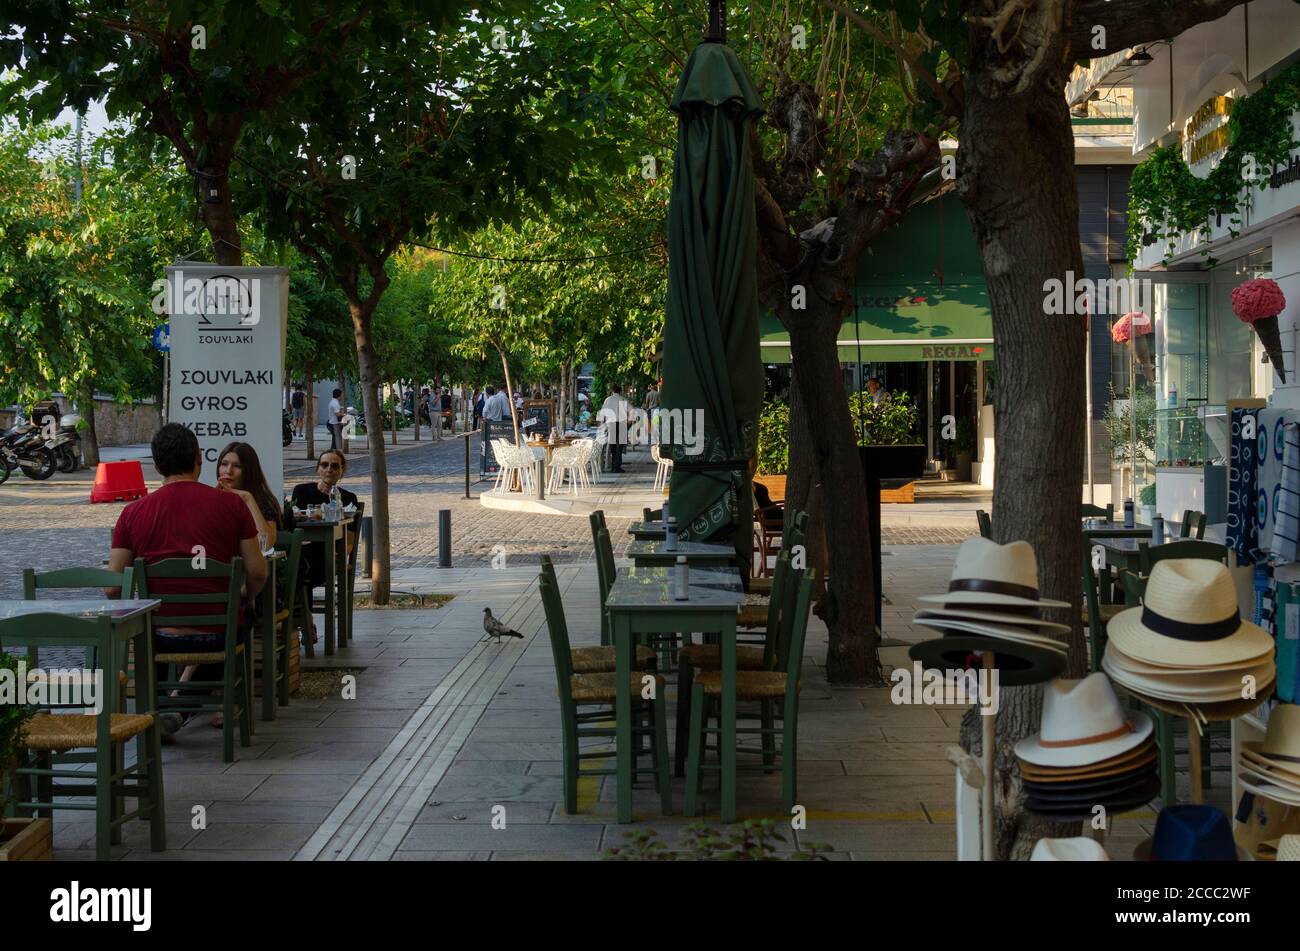 Menschen in Restaurants im Akropoli-Viertel der Innenstadt von Athen Griechenland - Foto: Geopix/Alamy Stock Photo Stockfoto